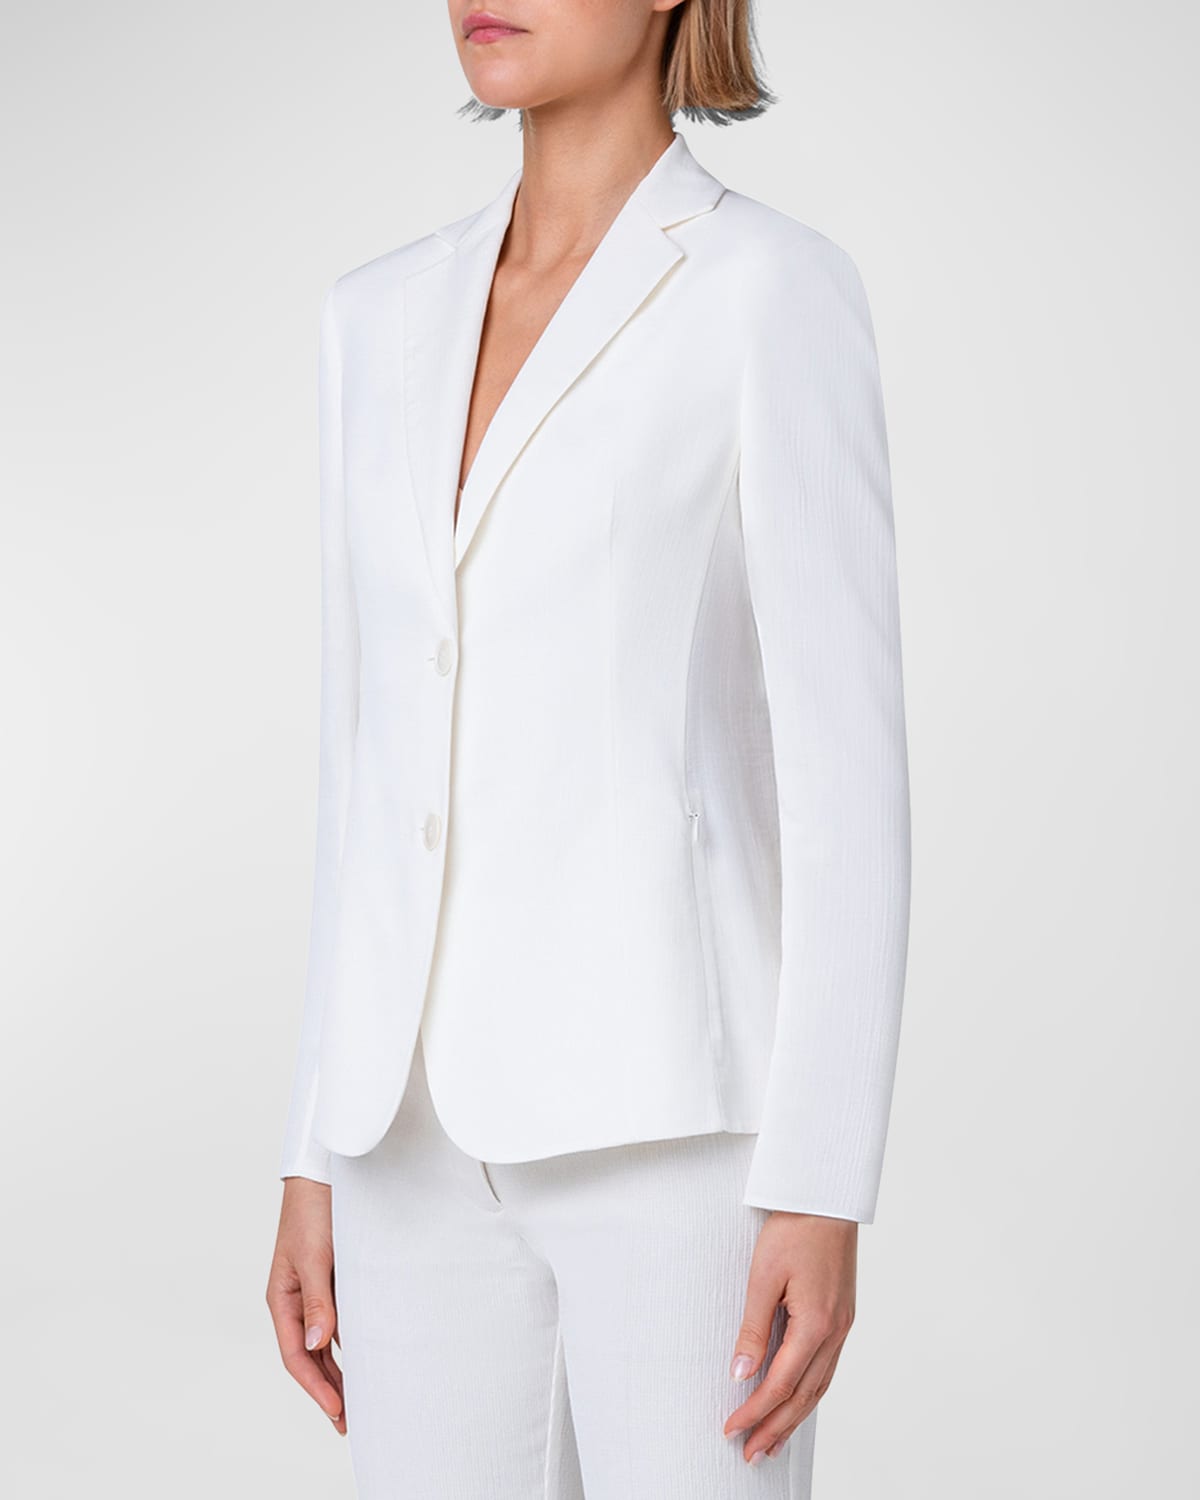 Lavino Structured Cotton Blazer Jacket